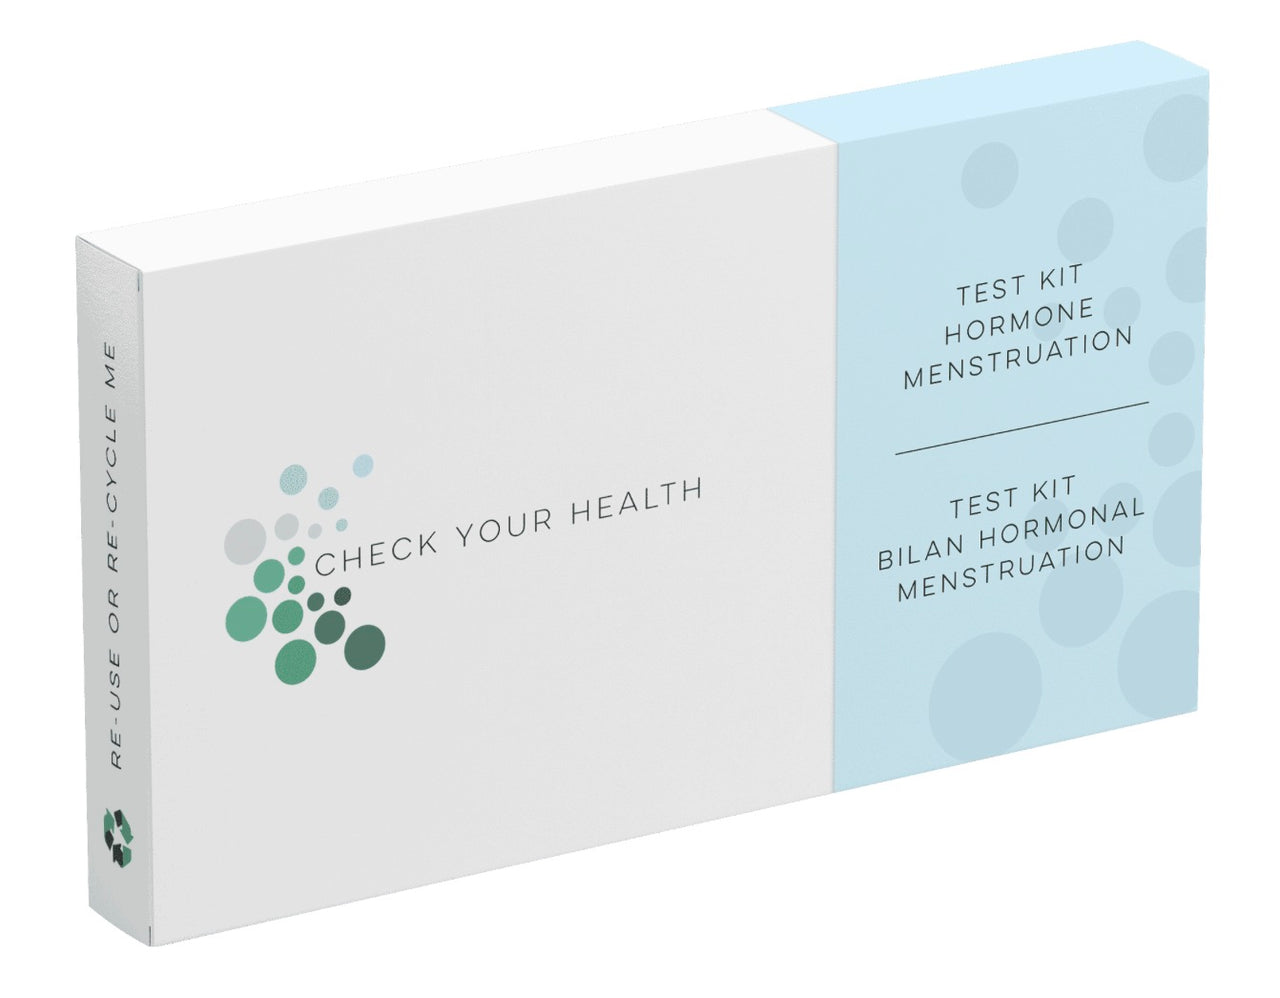 Test Kit Hormone Menstruation